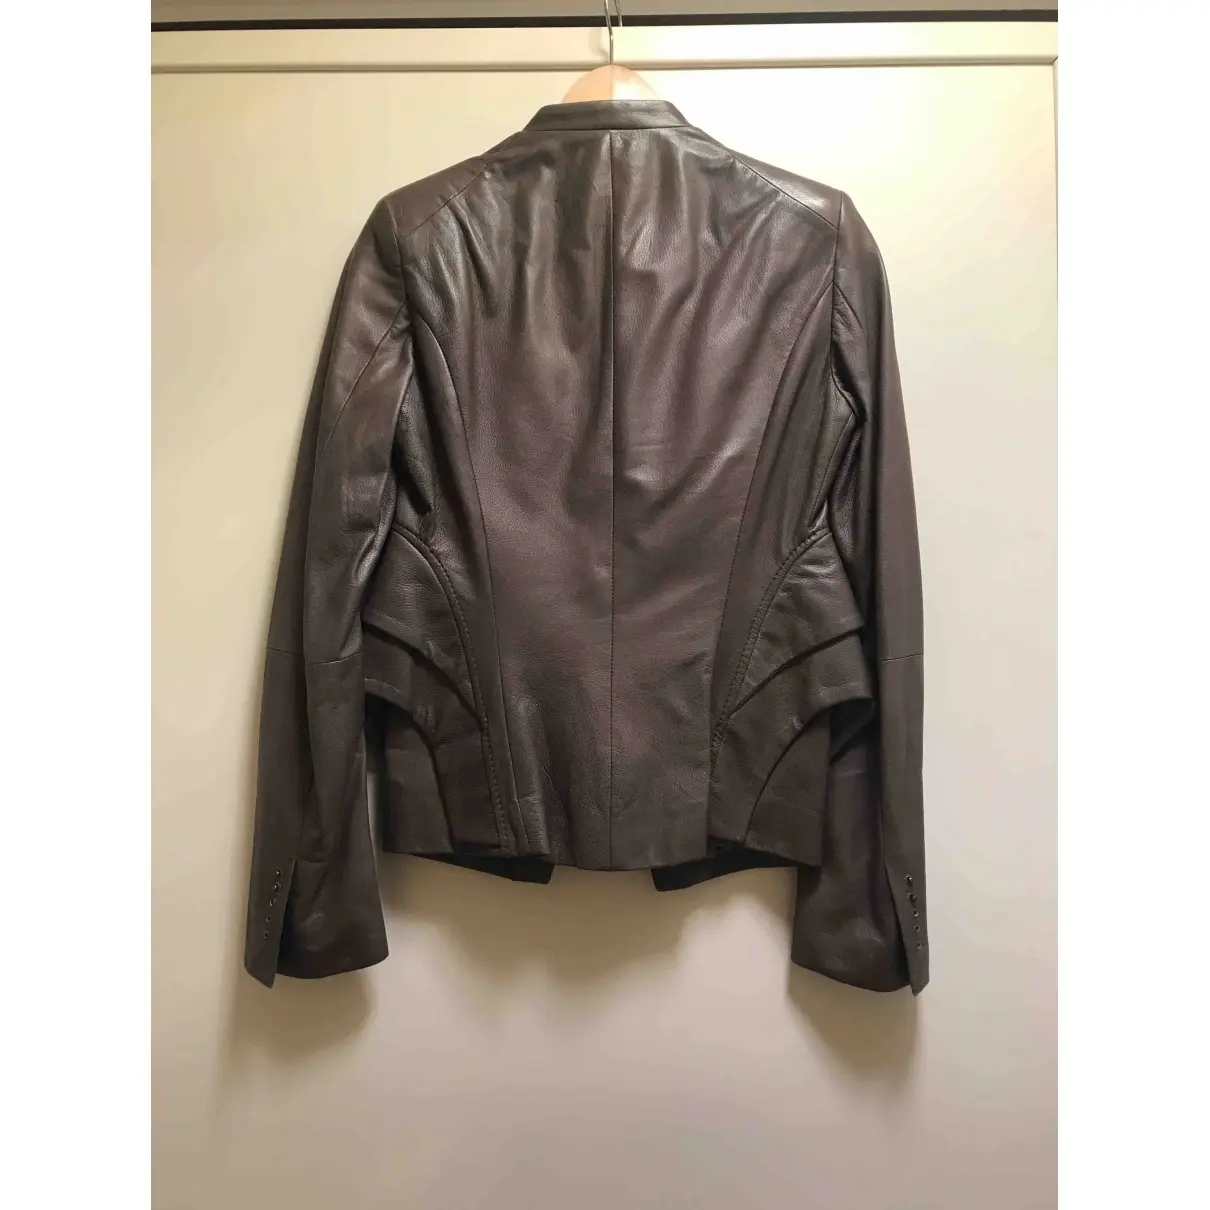 Antonio Berardi Leather short vest for sale